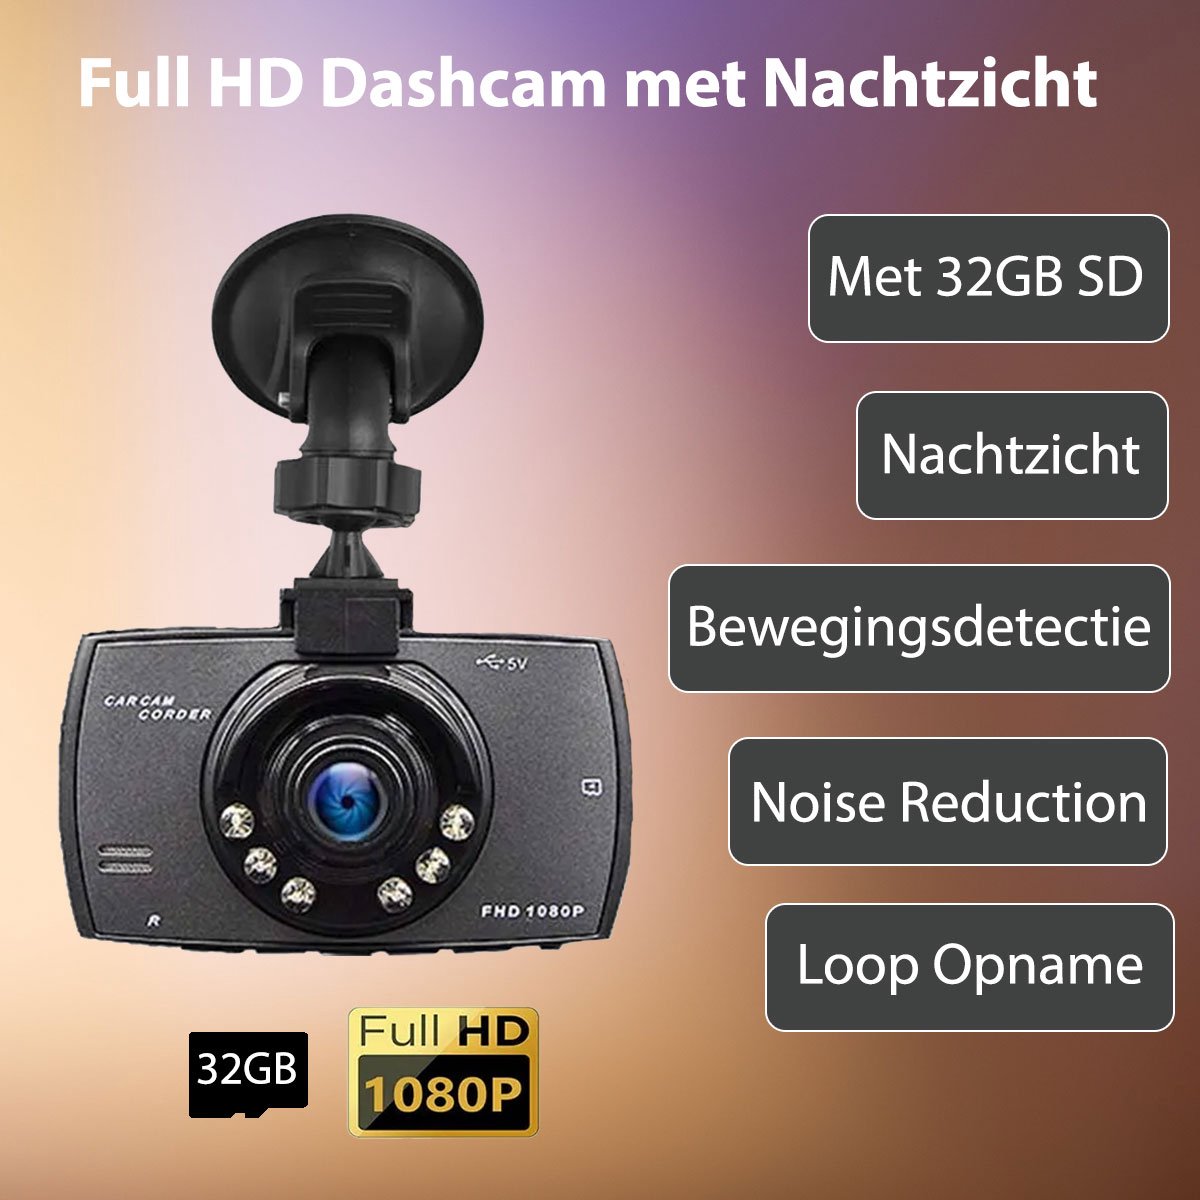 Dashcam - Nachtzicht - Full HD - met 32GB SD - 2.4